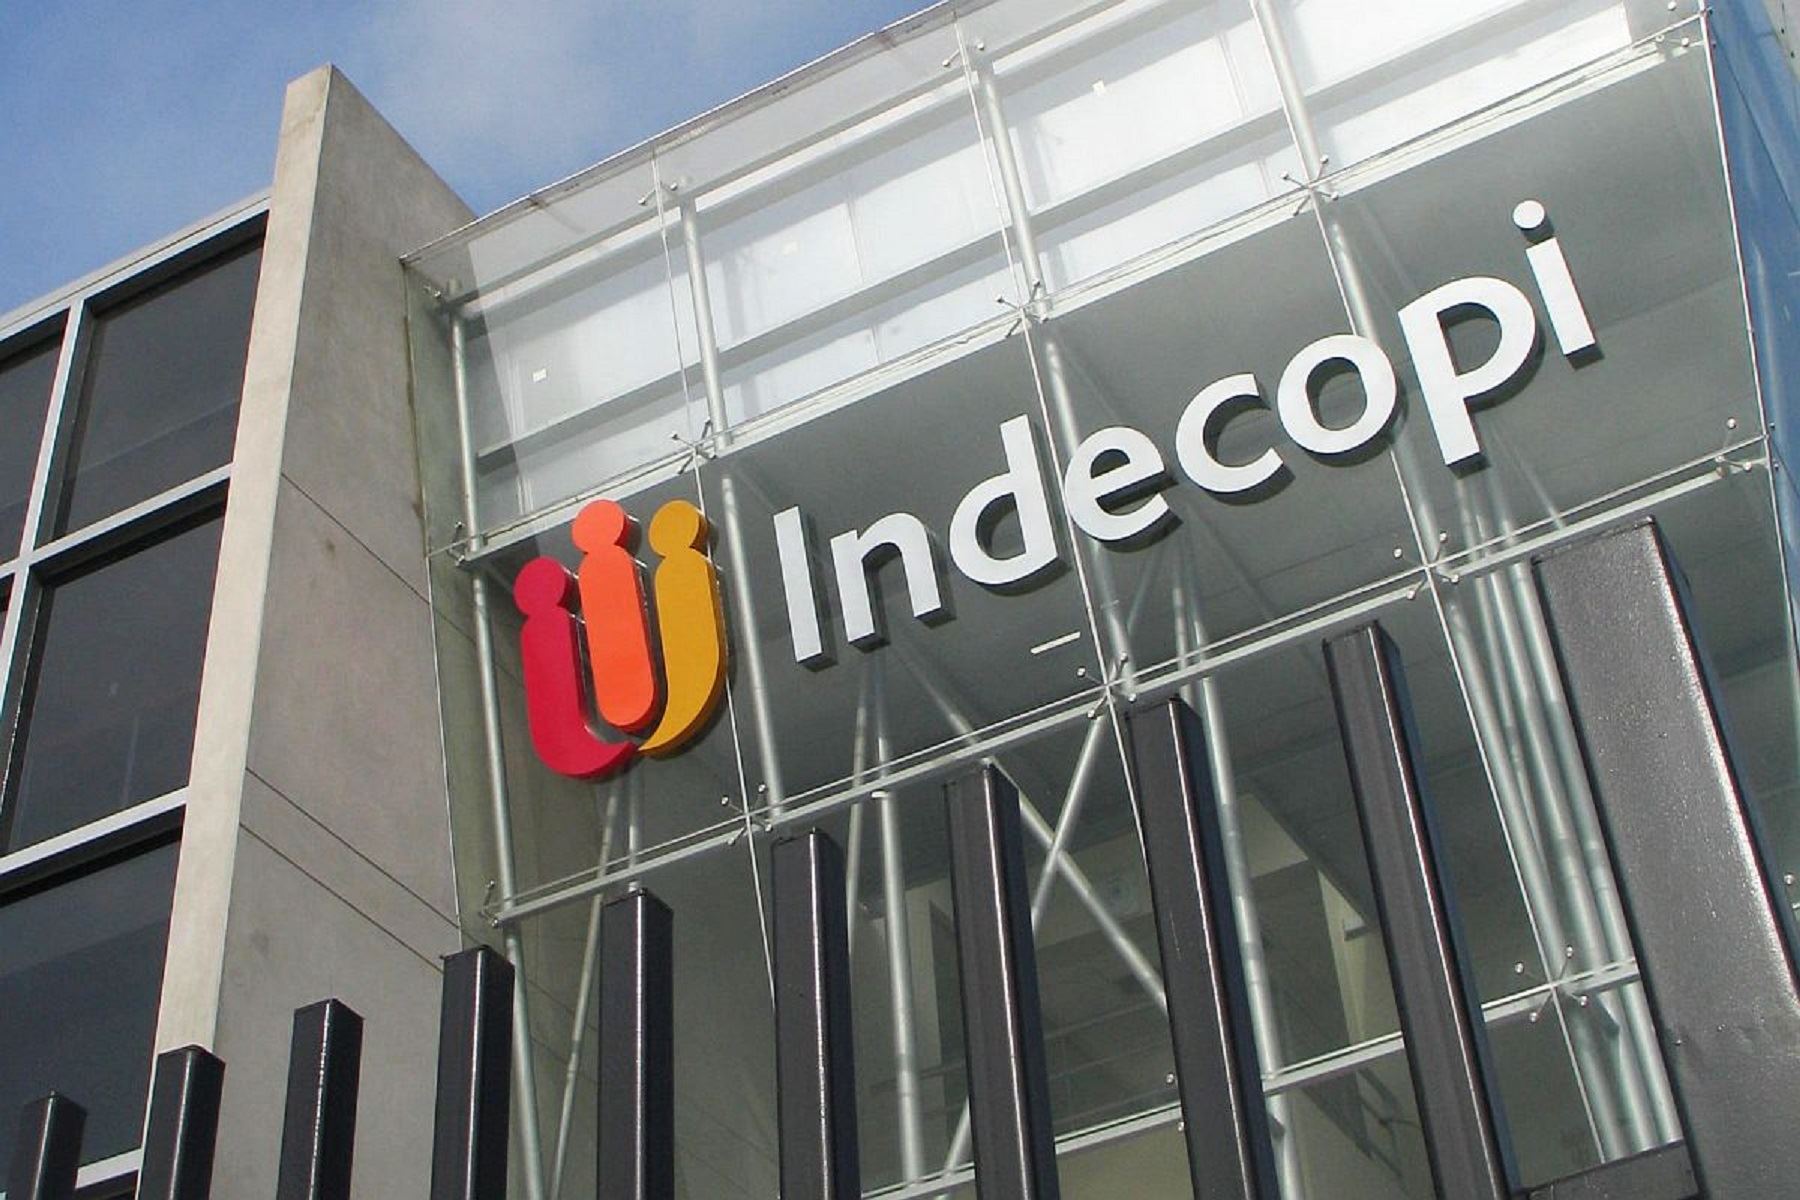 Indecopi organiza simposio internacional en control de concentración empresarial